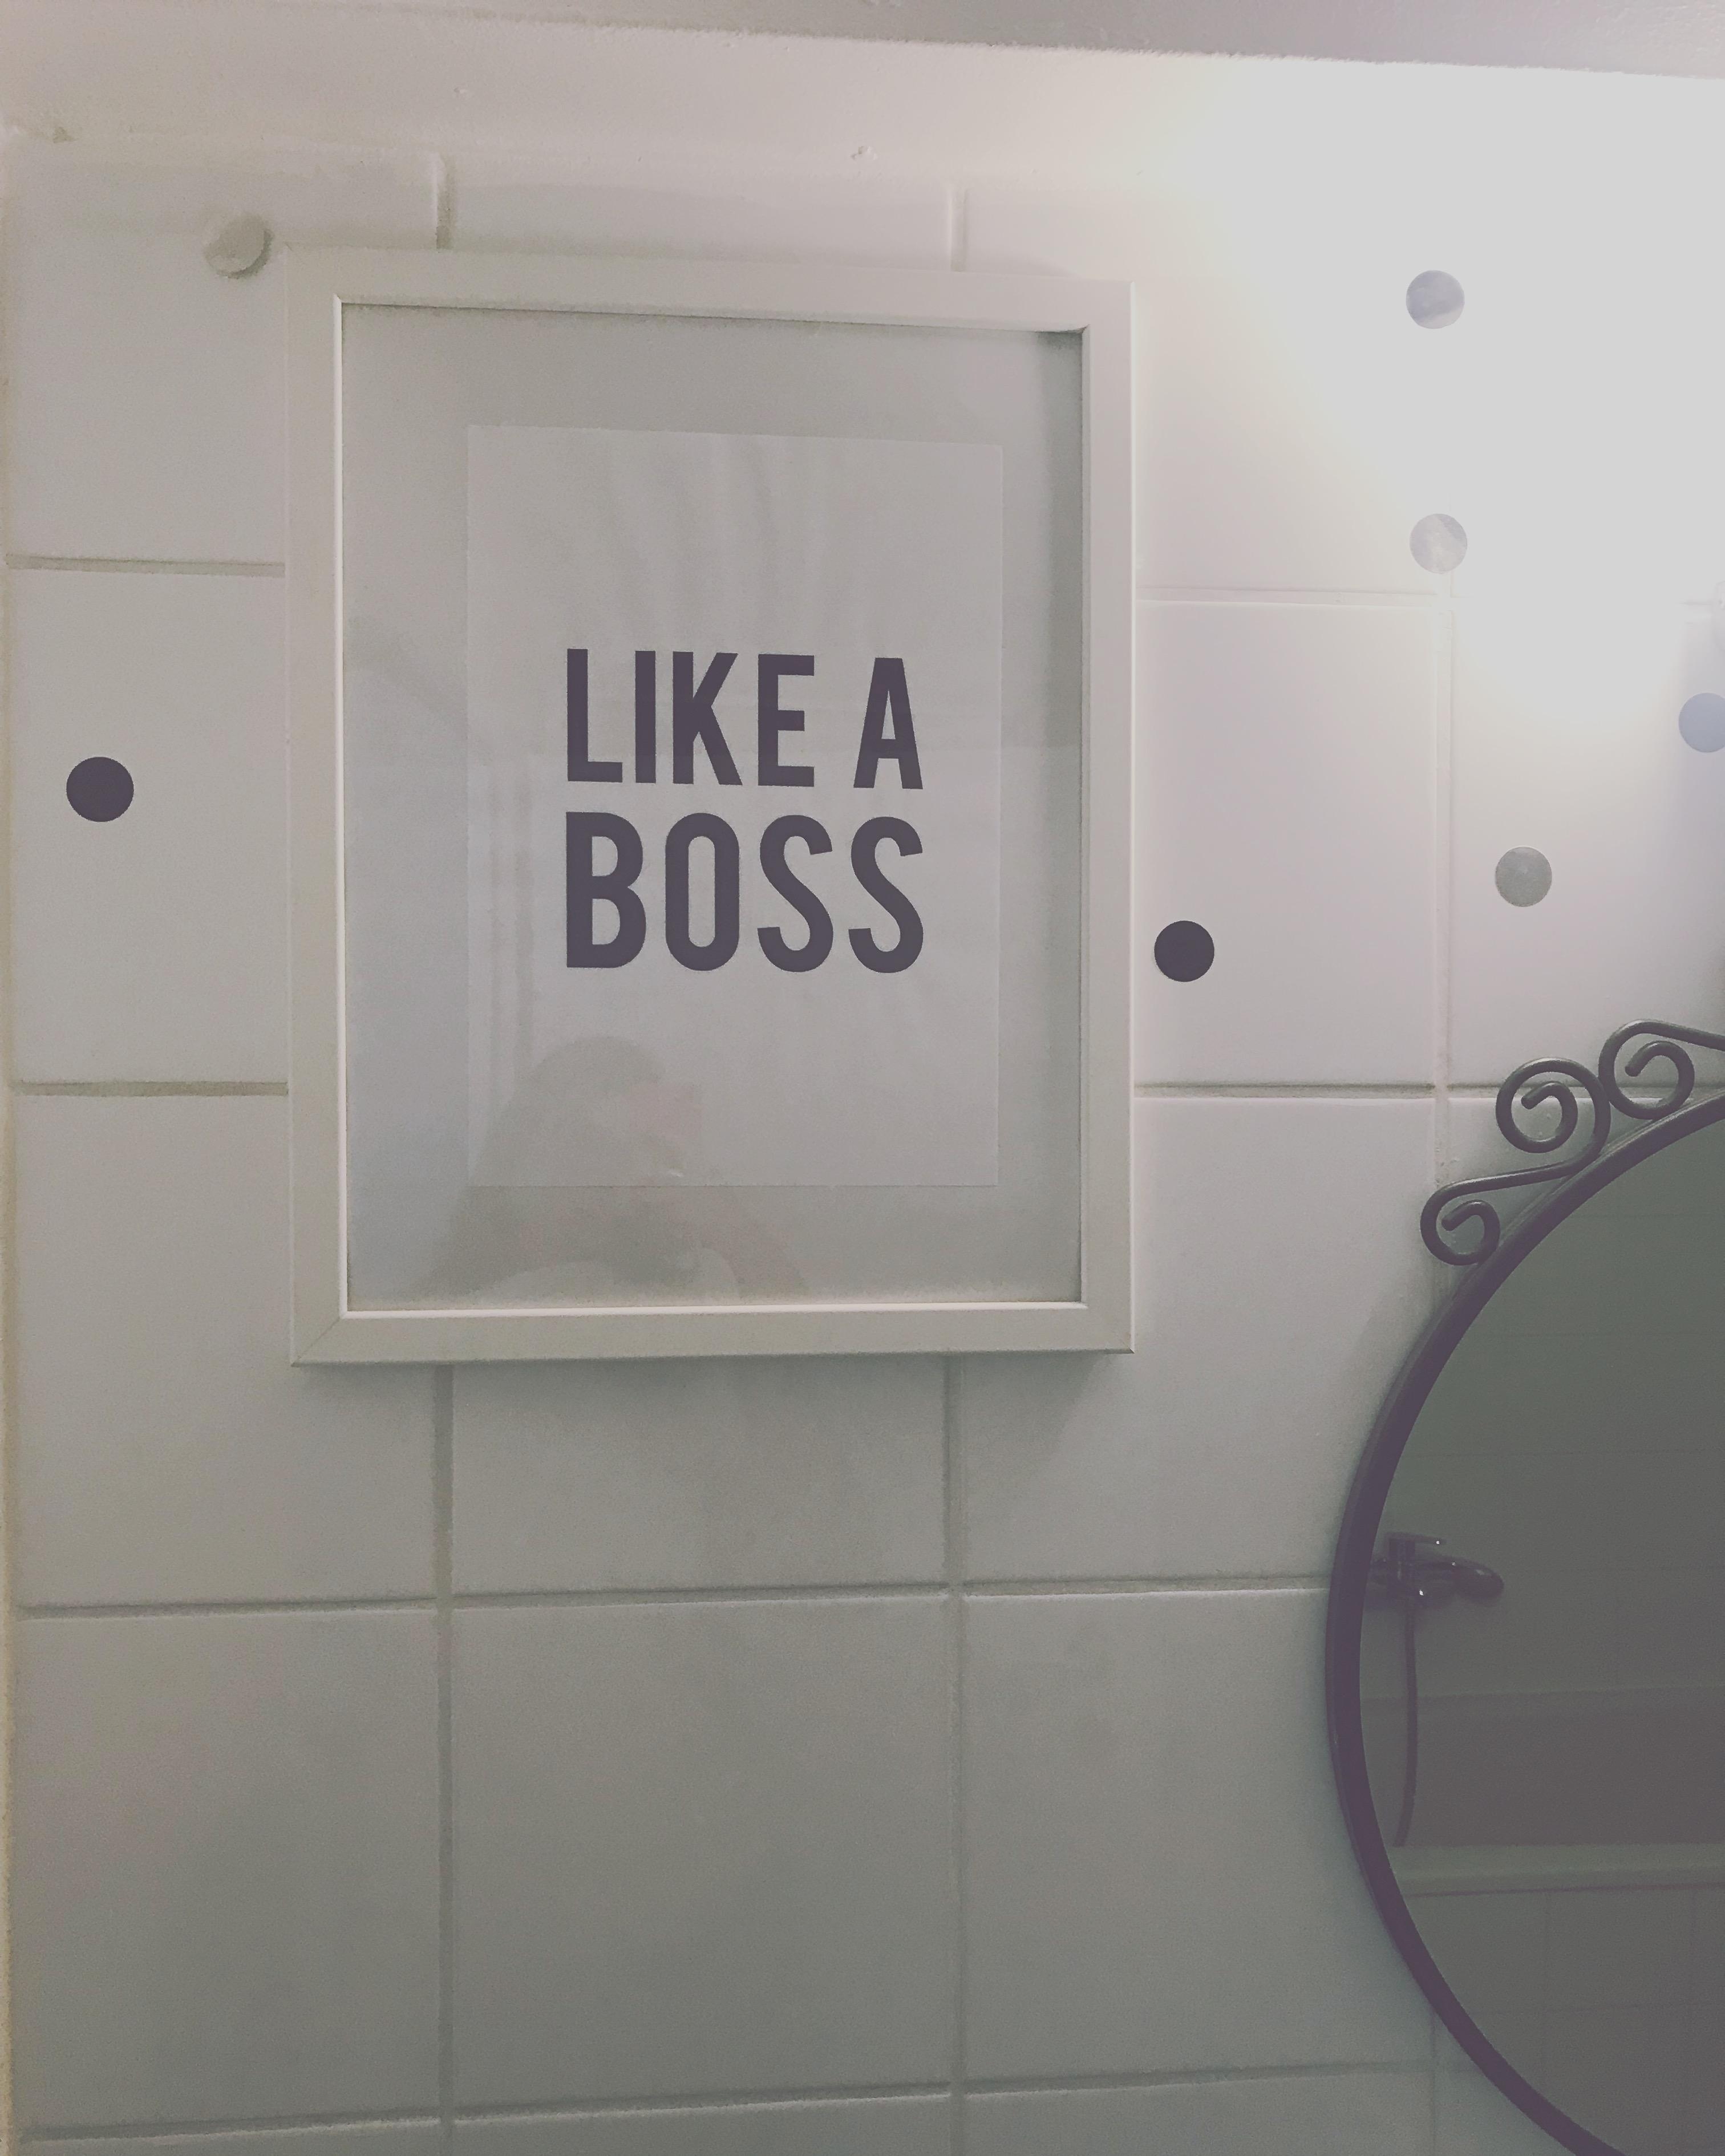 Das perfekte Bild für den richtigen Blick in den Spiegel im
Bad 😅 #blackandwhite #selflove #minimalism